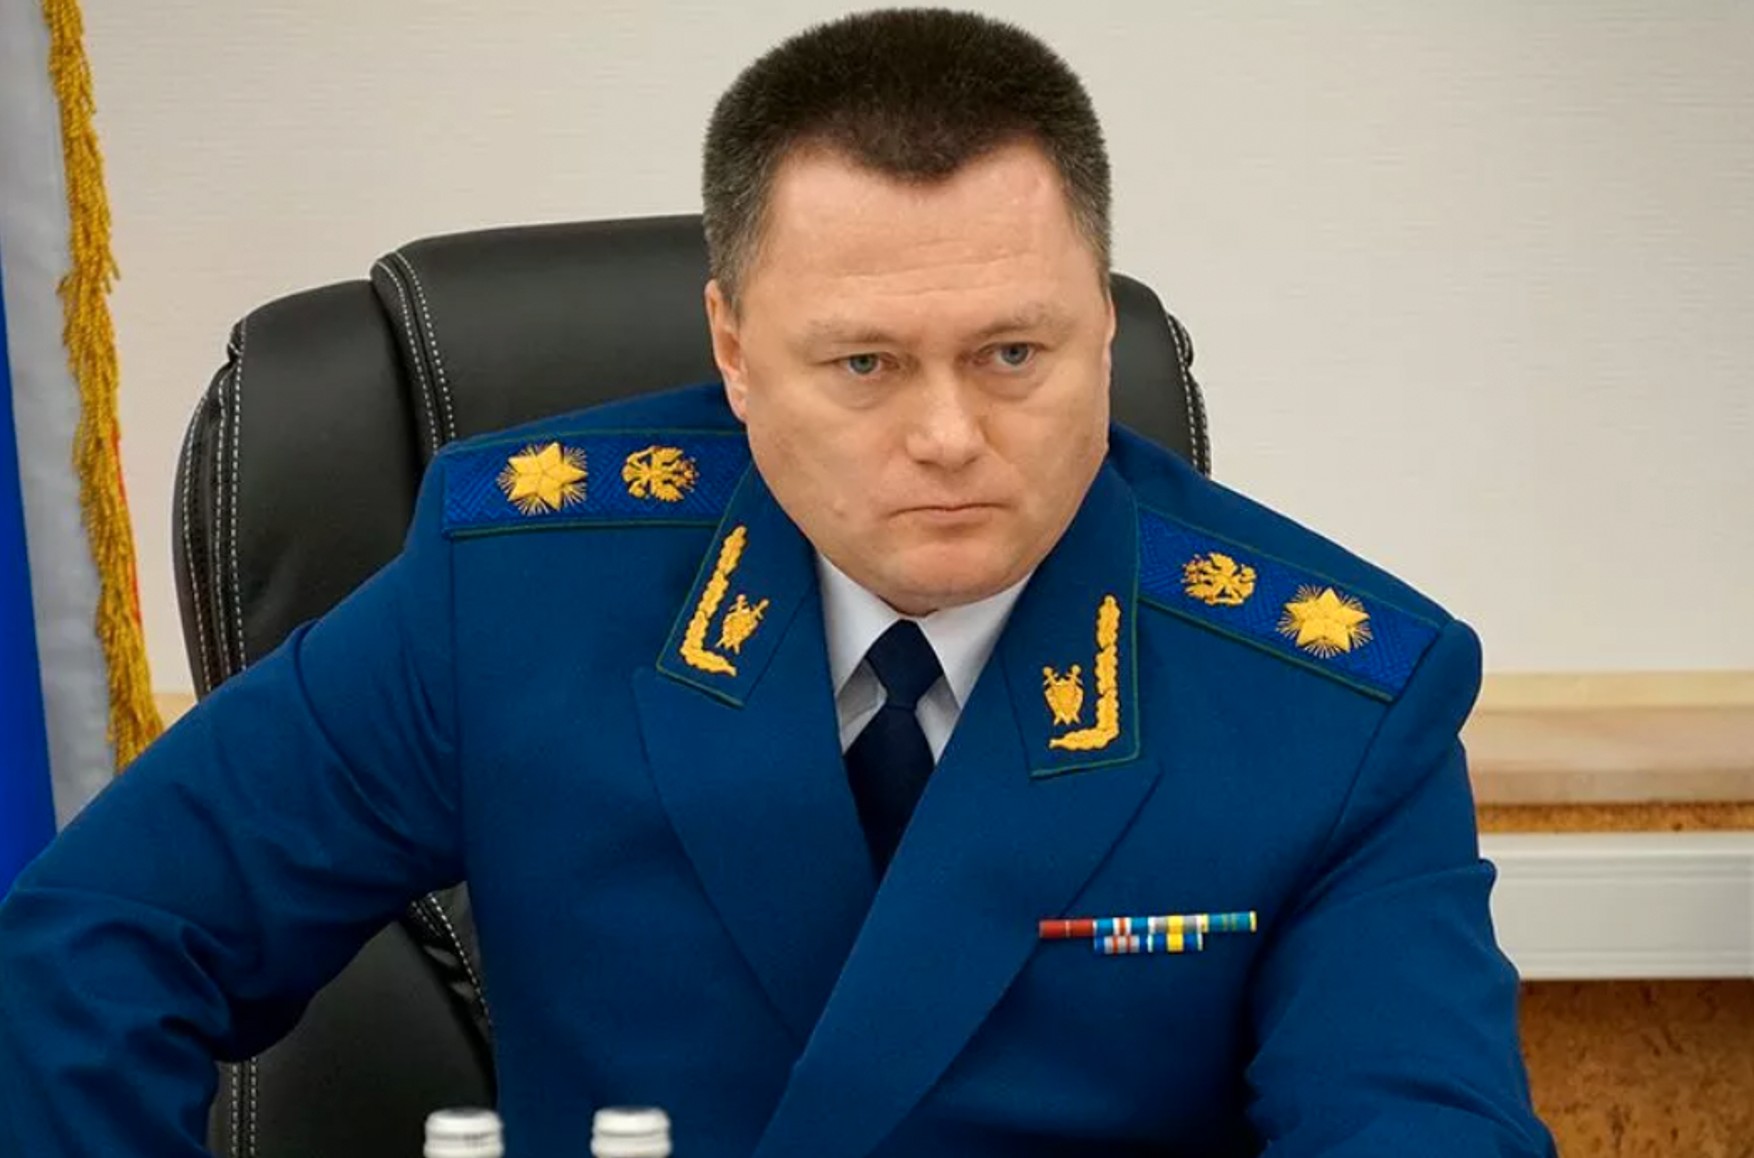 Генпрокурор заявил об ущербе от коррупции в 100 млрд рублей. The Insider писал, что взятки берет его заместитель